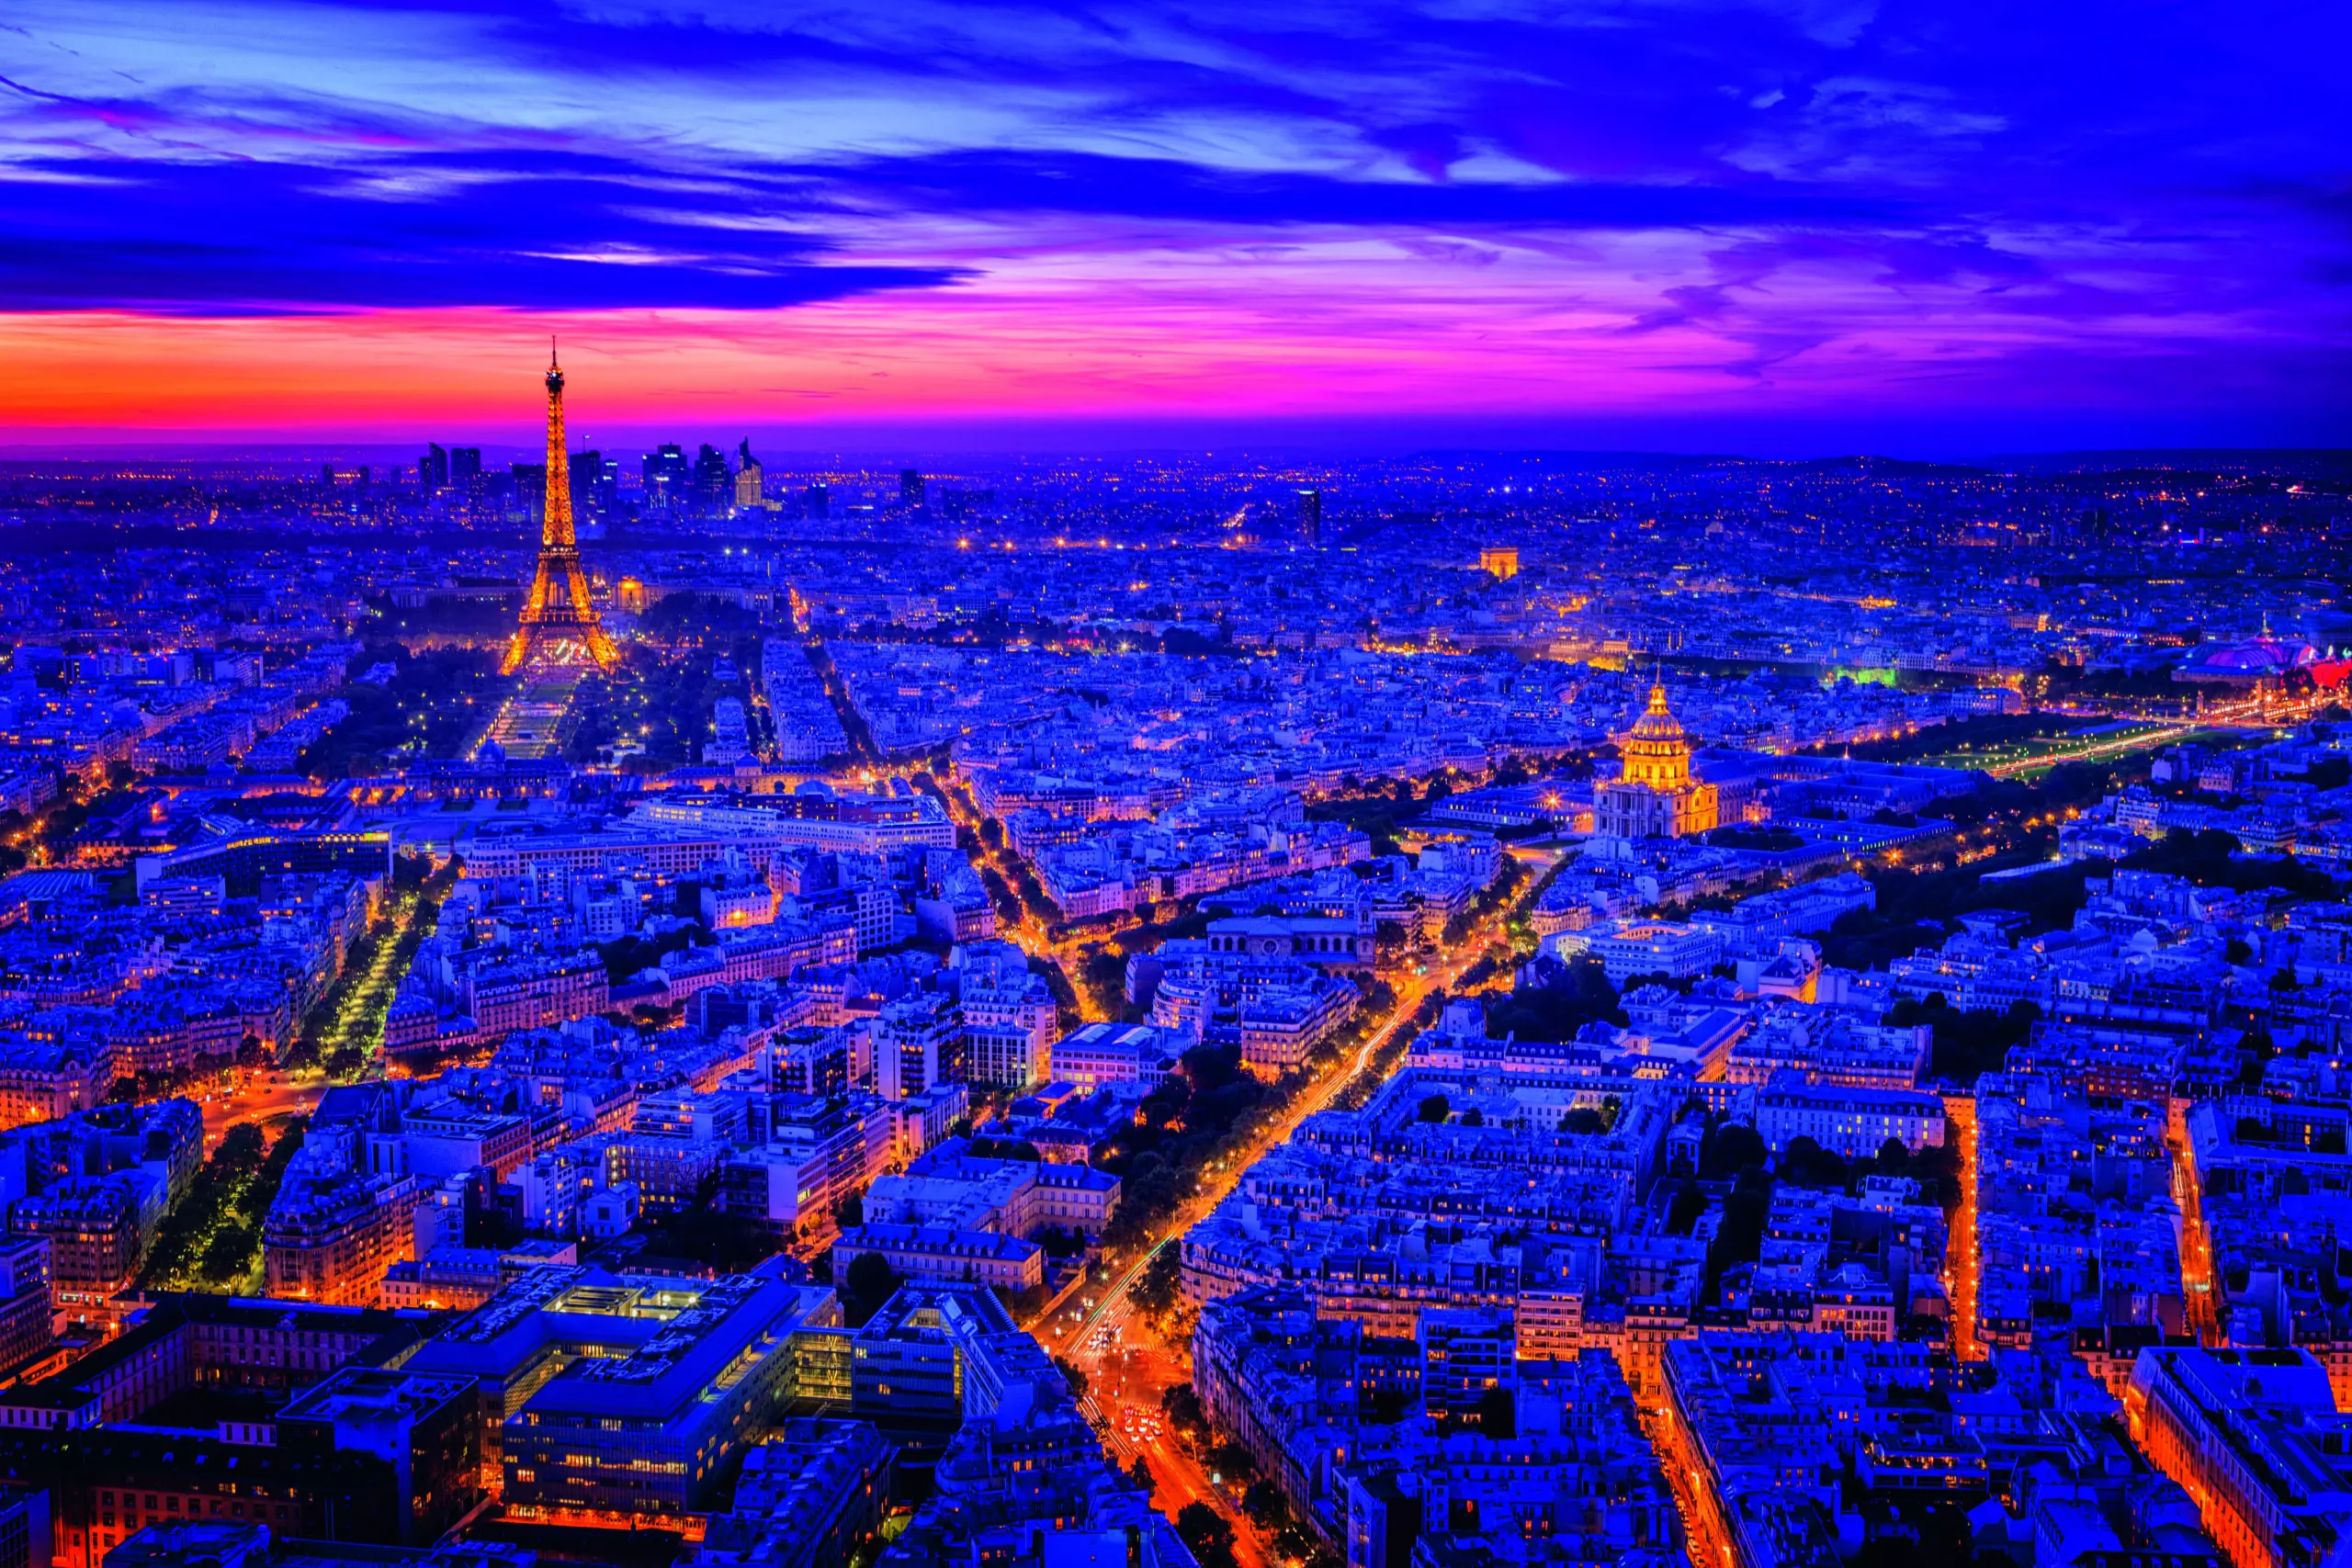 Wandbild (5844) Paris I, by juan de Pablo, 1x.com präsentiert: Technik,Architektur,Häuser,Skylines,Sehenswürdigkeiten